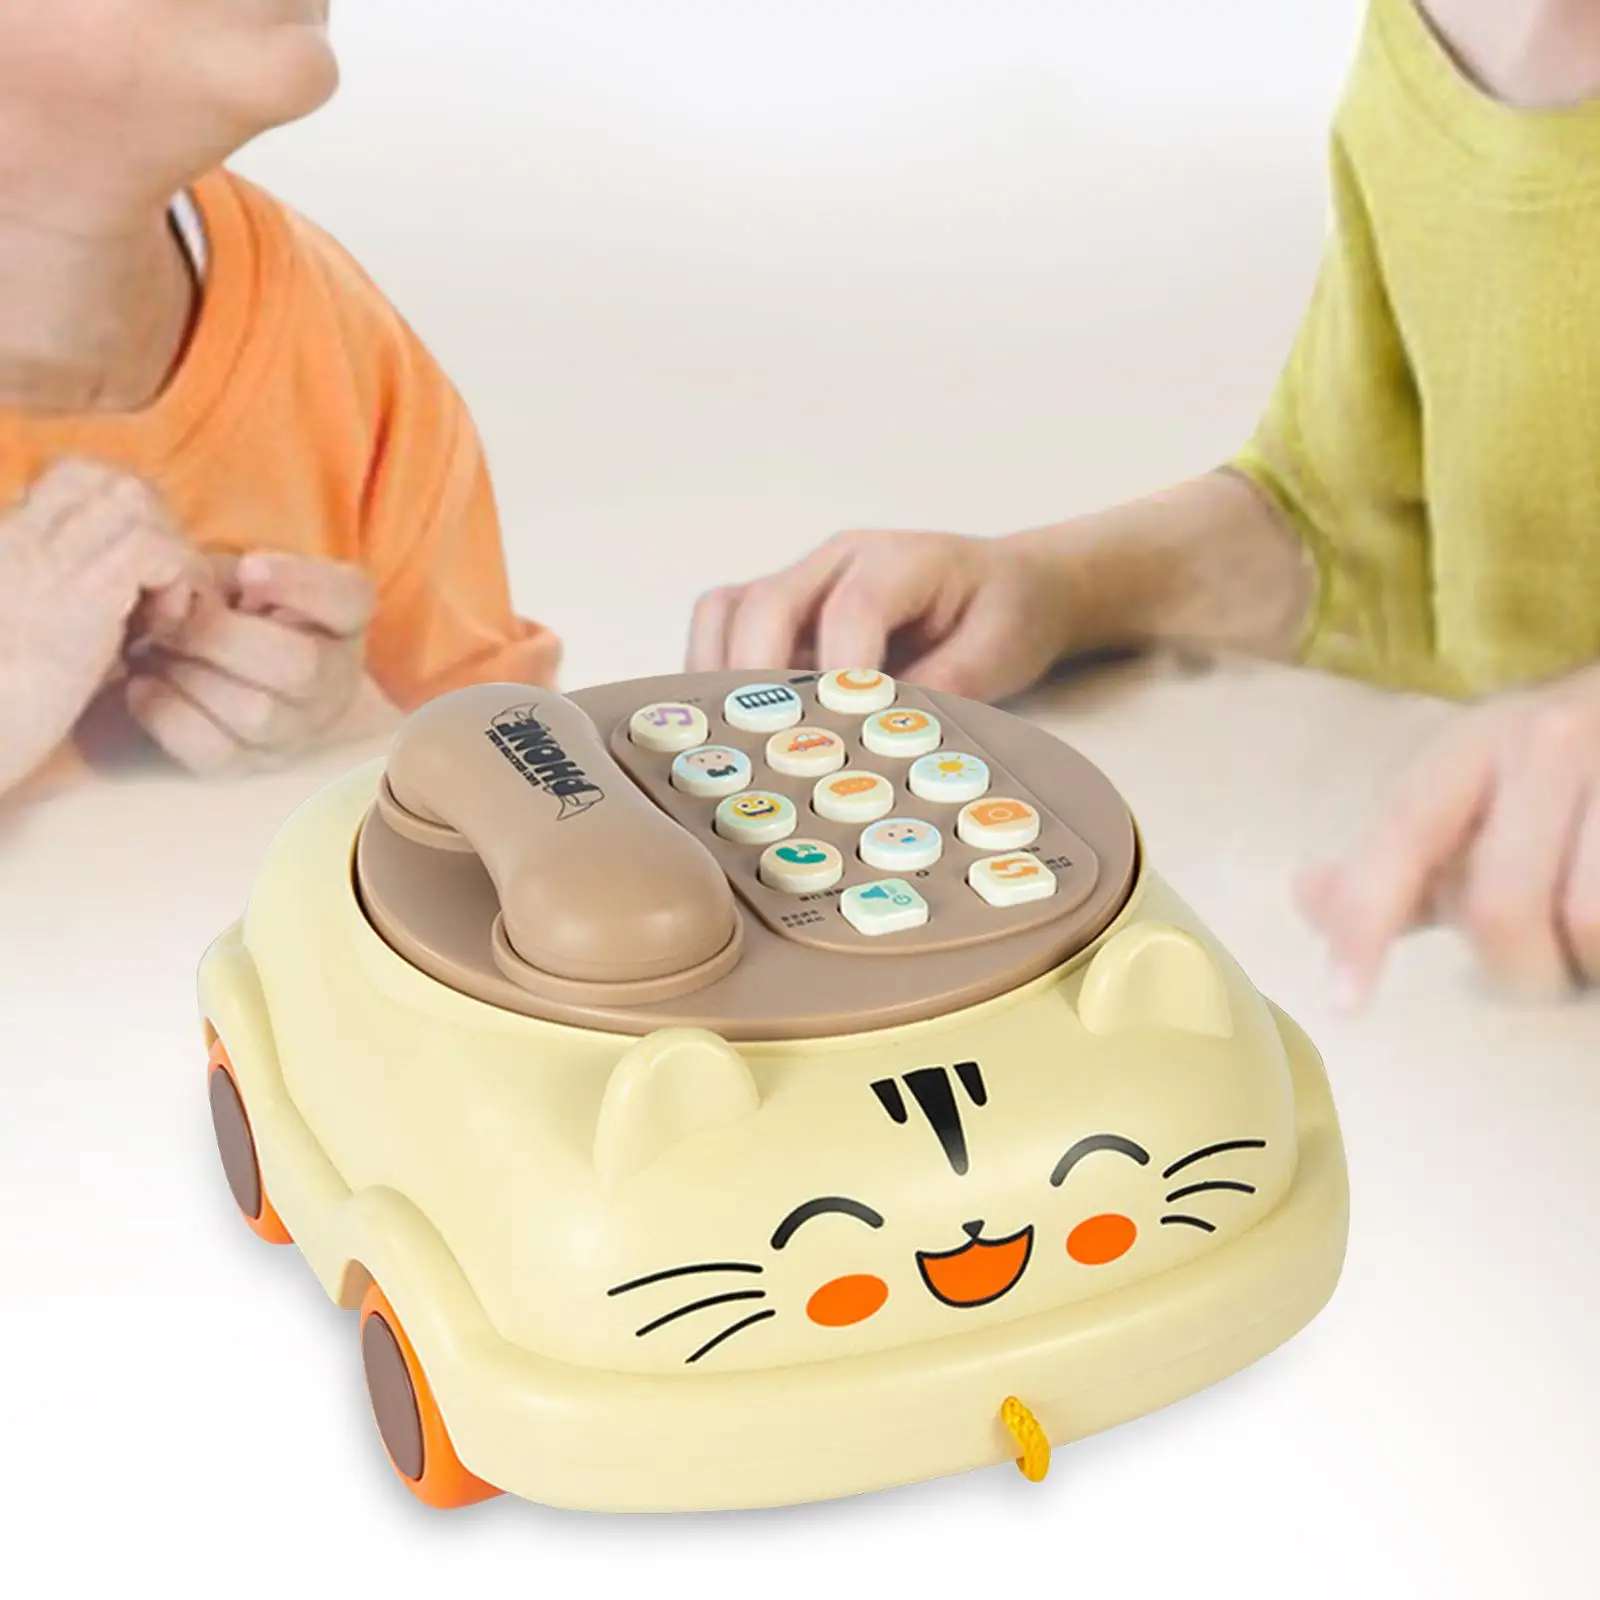 Kid Phone sviluppo cognitivo giocattolo luci pianoforte apprendimento precoce giocattolo telefoni giocattolo per l'apprendimento educativo prescolare ragazza